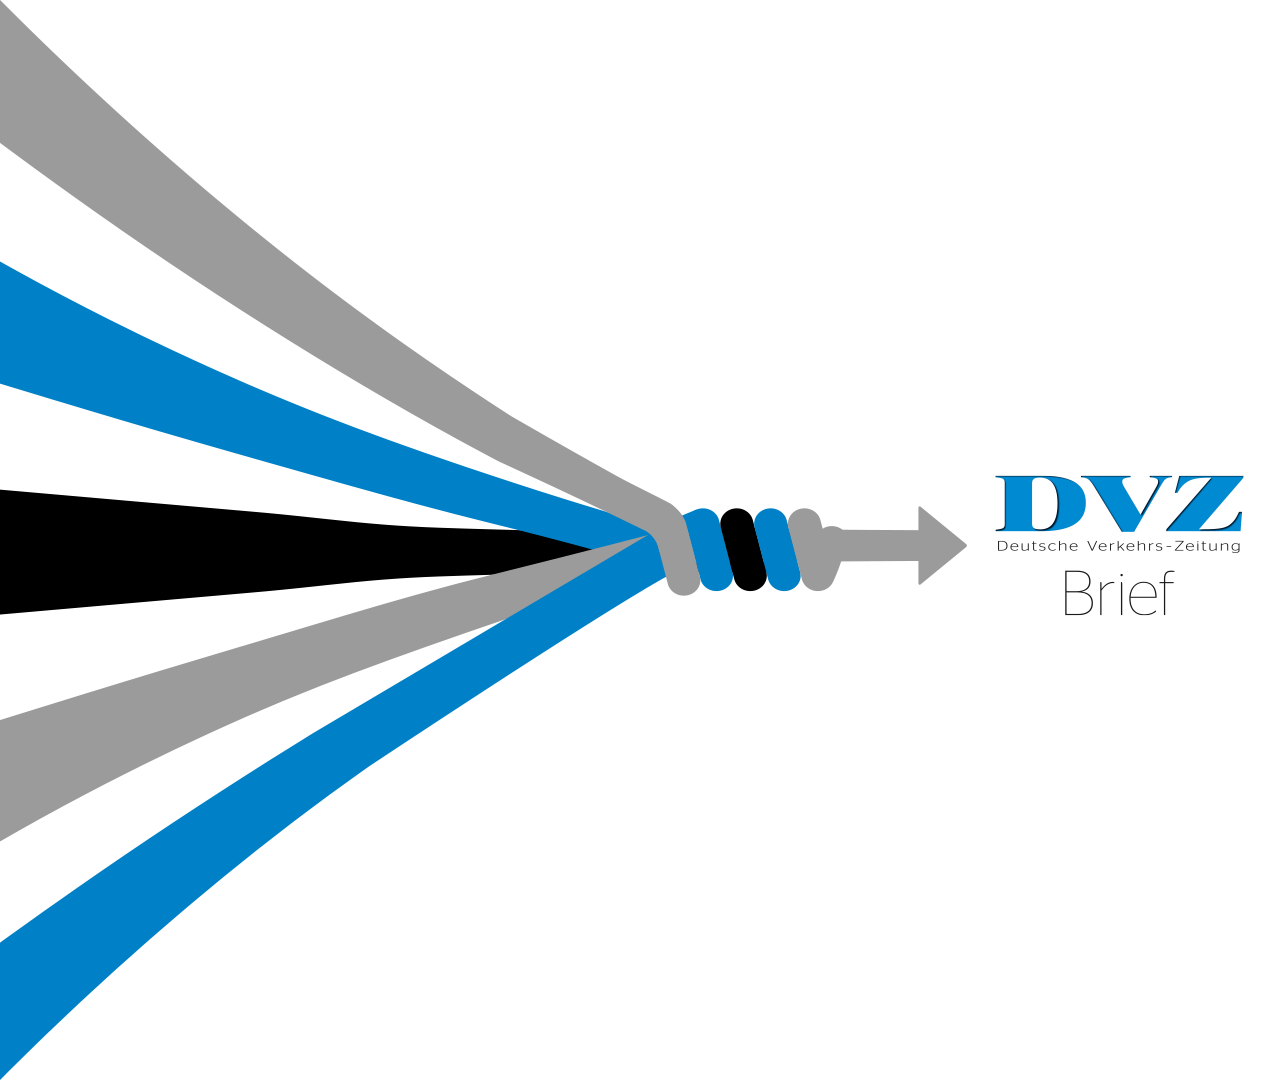 DVZ-Brief - exklusive Top-Informationen aus der Transport- und Logistikbranche